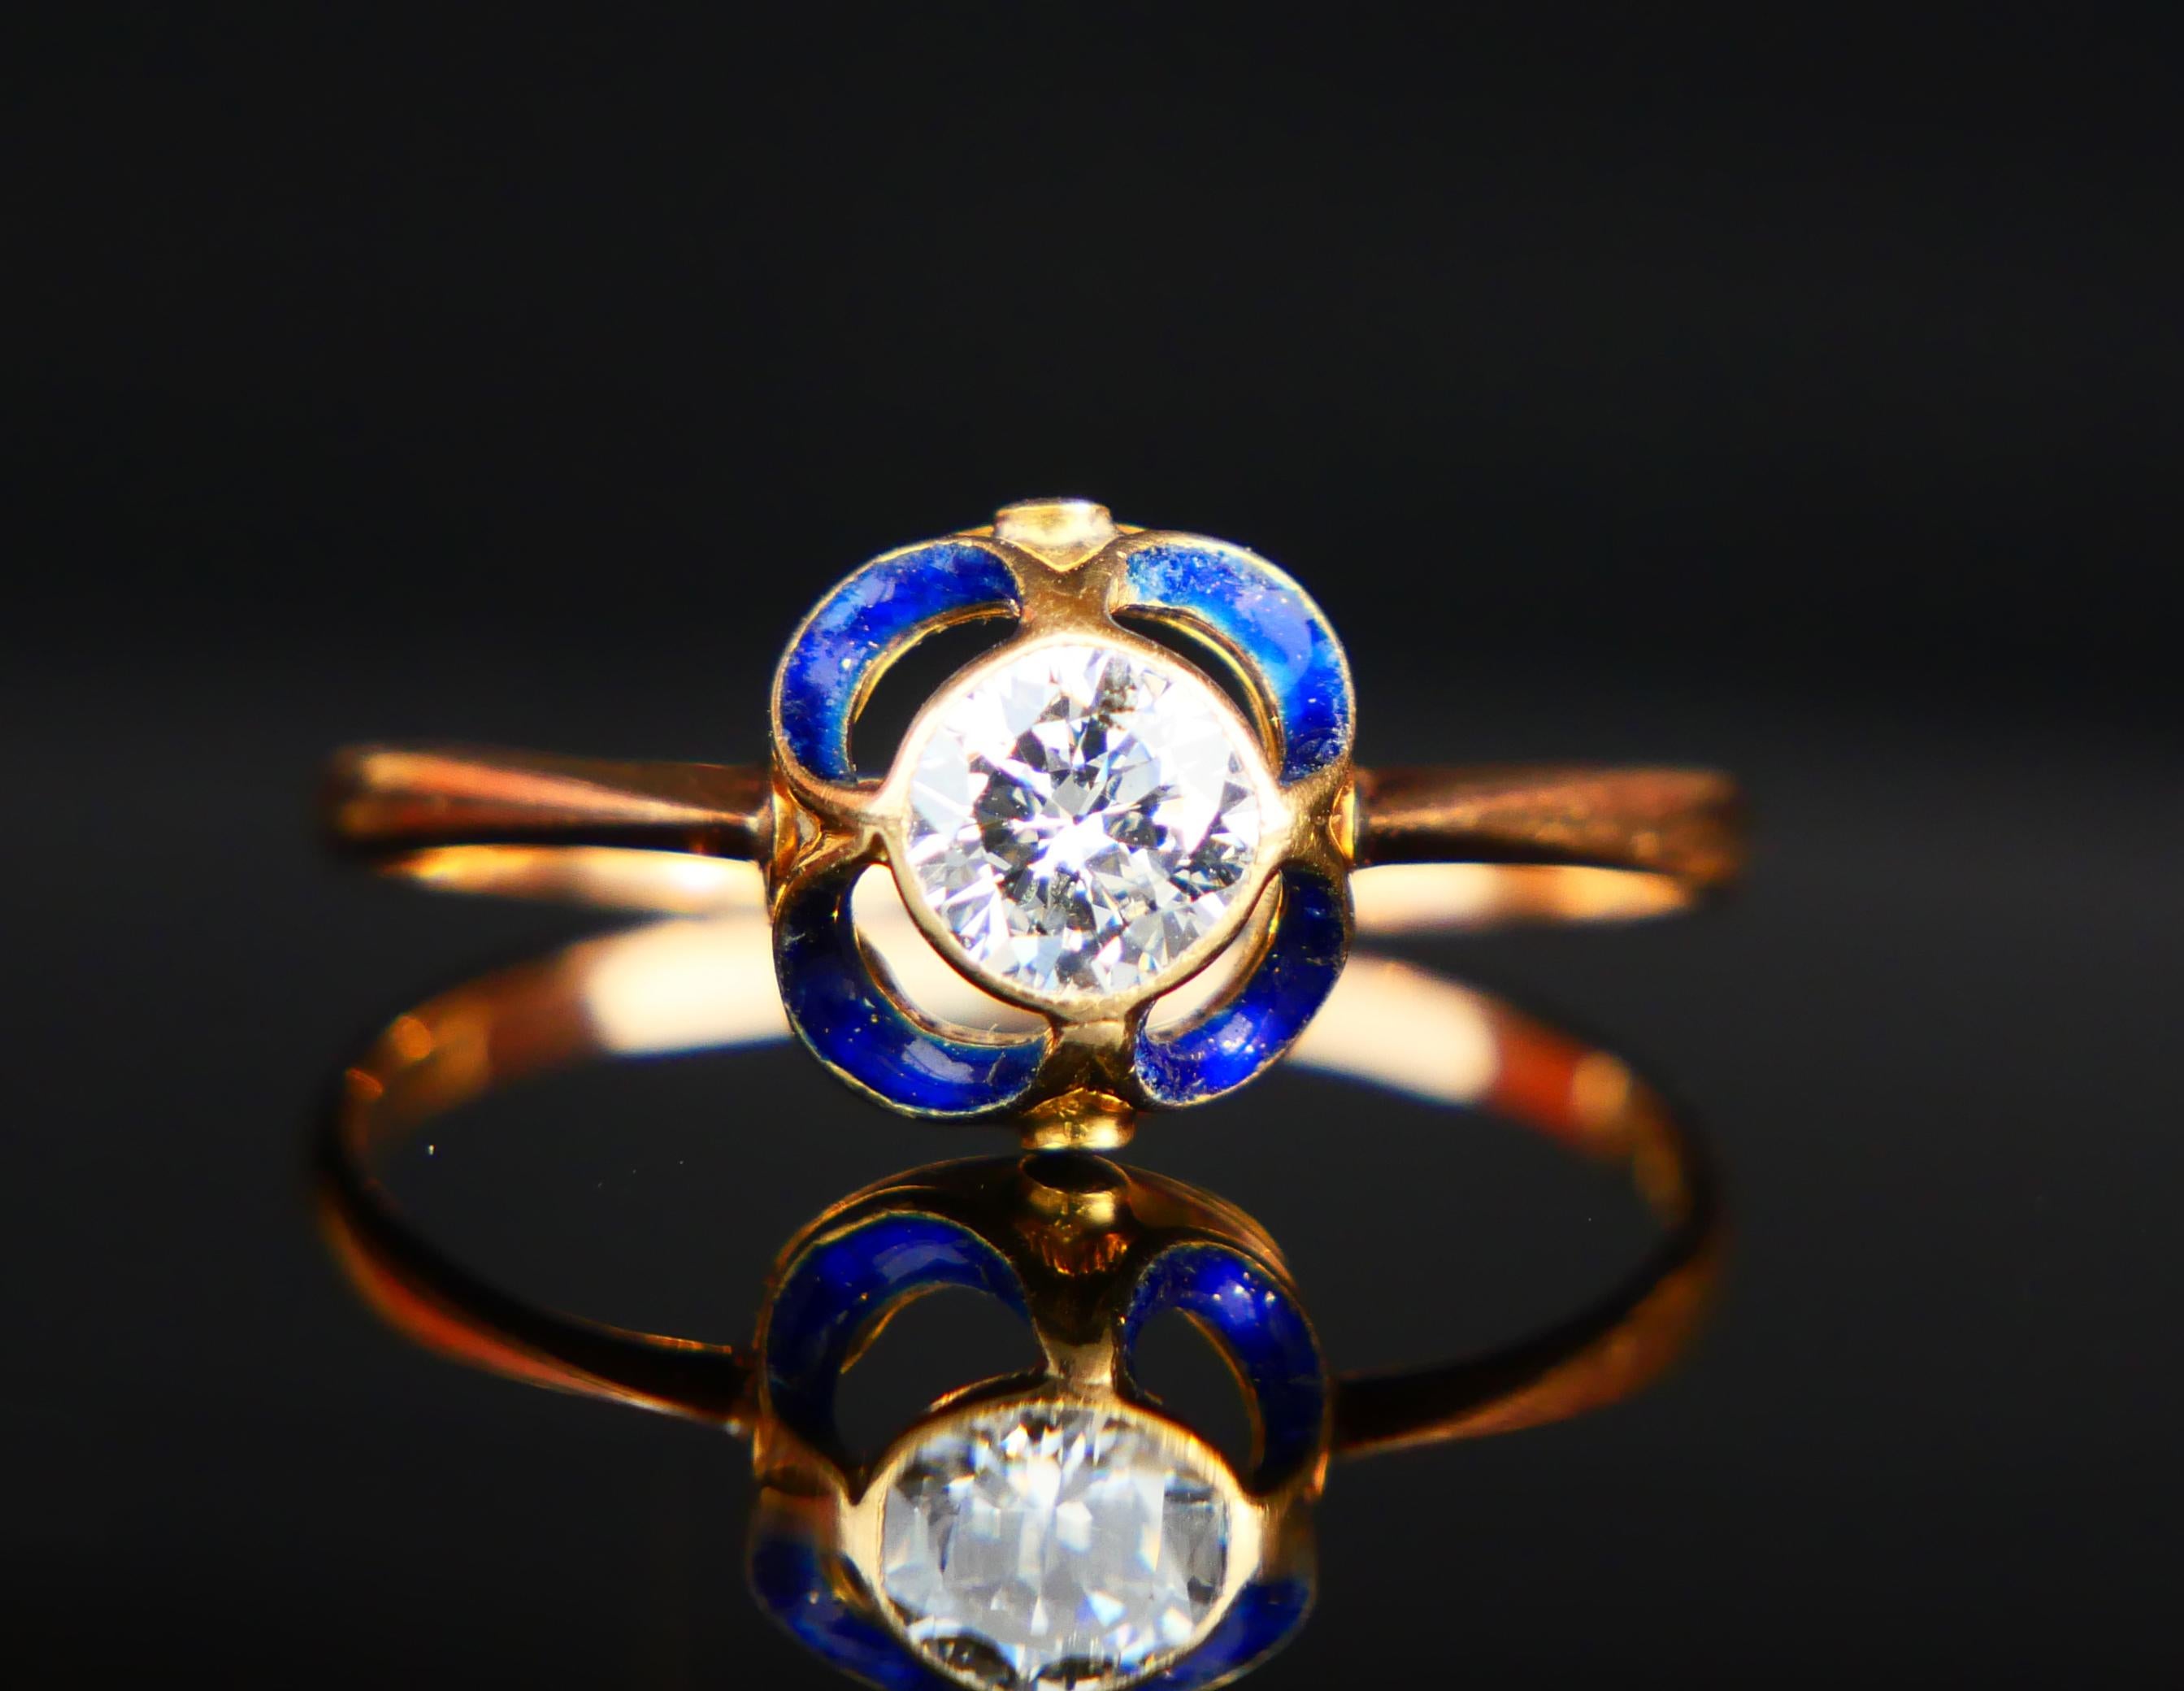 1904 Nordic Art Nouveau Ring 05ct. Diamond Blue Enamel 18K Gold ØUS9.5/2.5gr For Sale 4